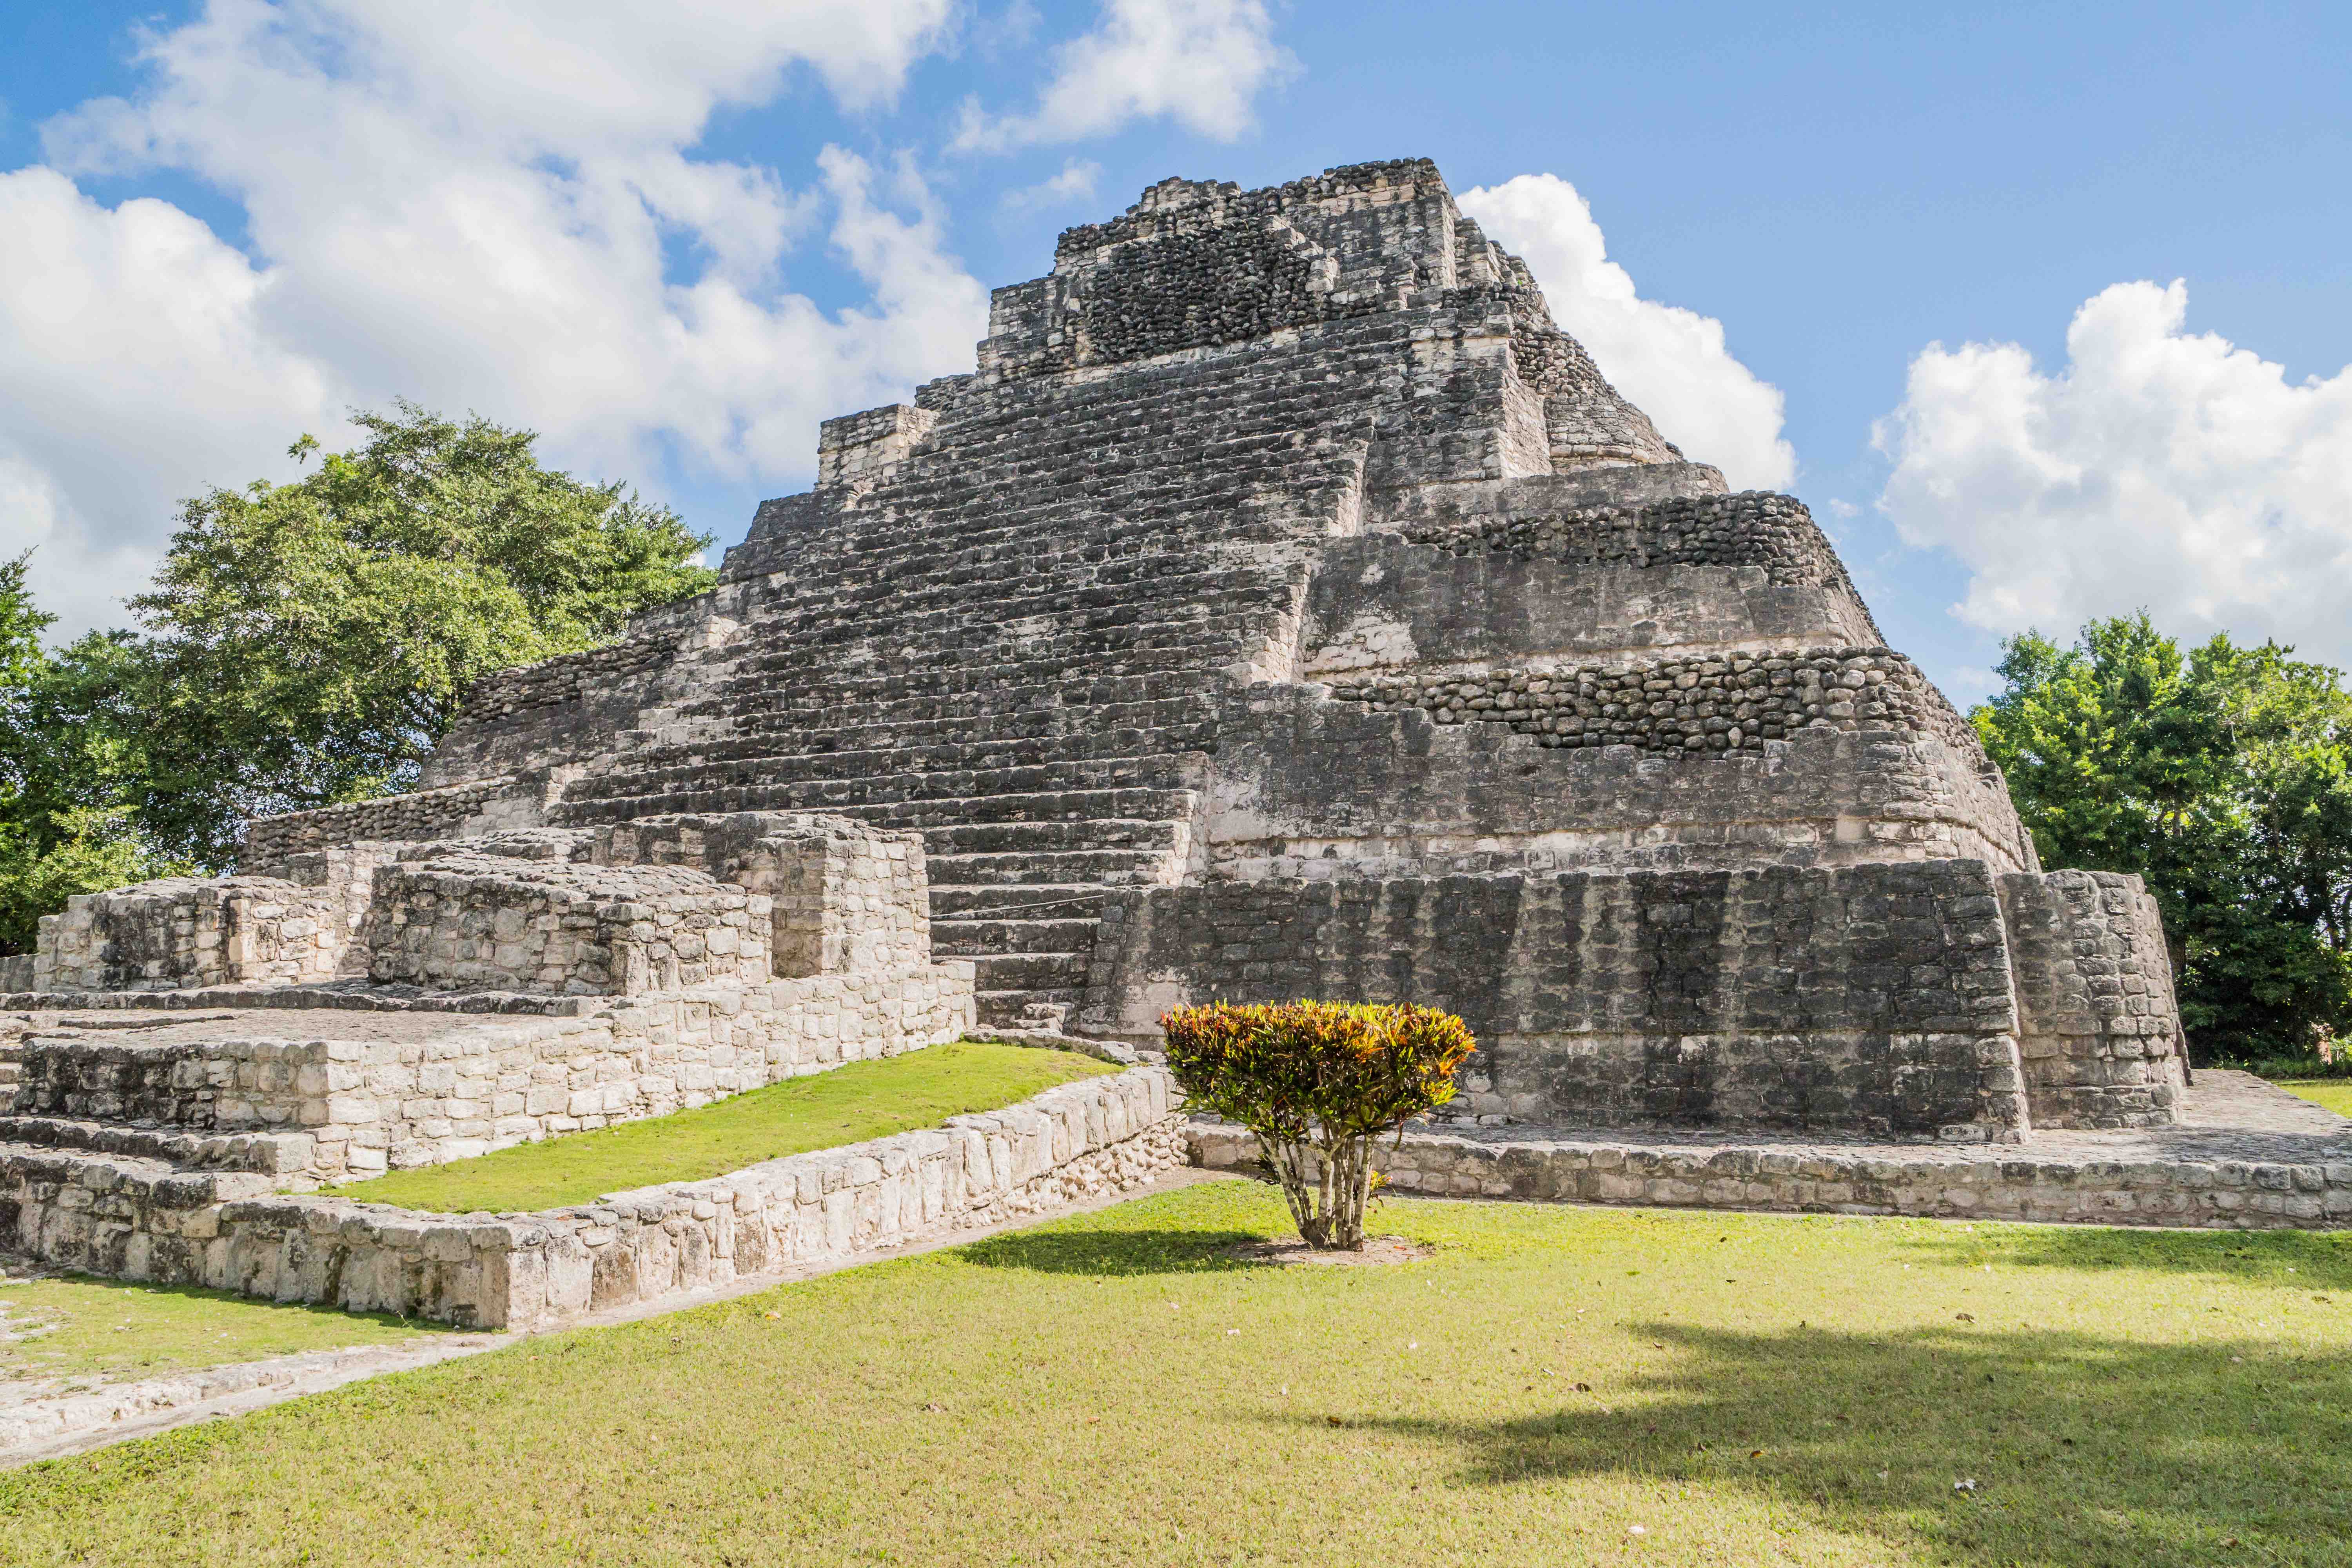 Mayan stepped temple ruins near Costa Maya, Mexico